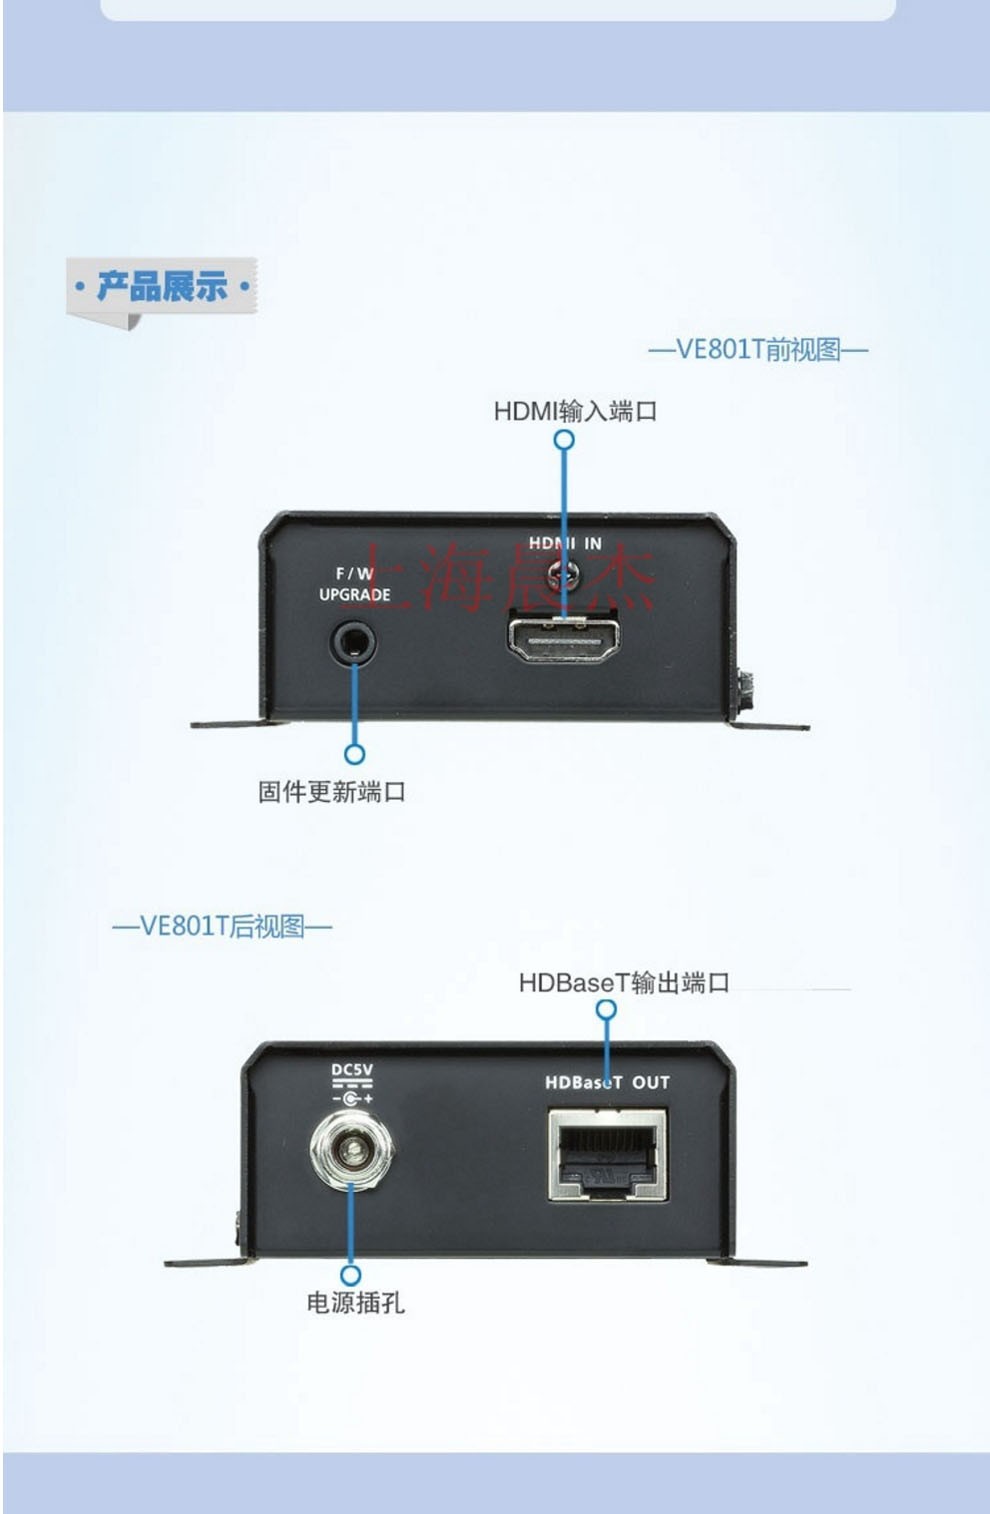 セール HDMIツイストペアケーブルエクステンダー 4K対応 VE801